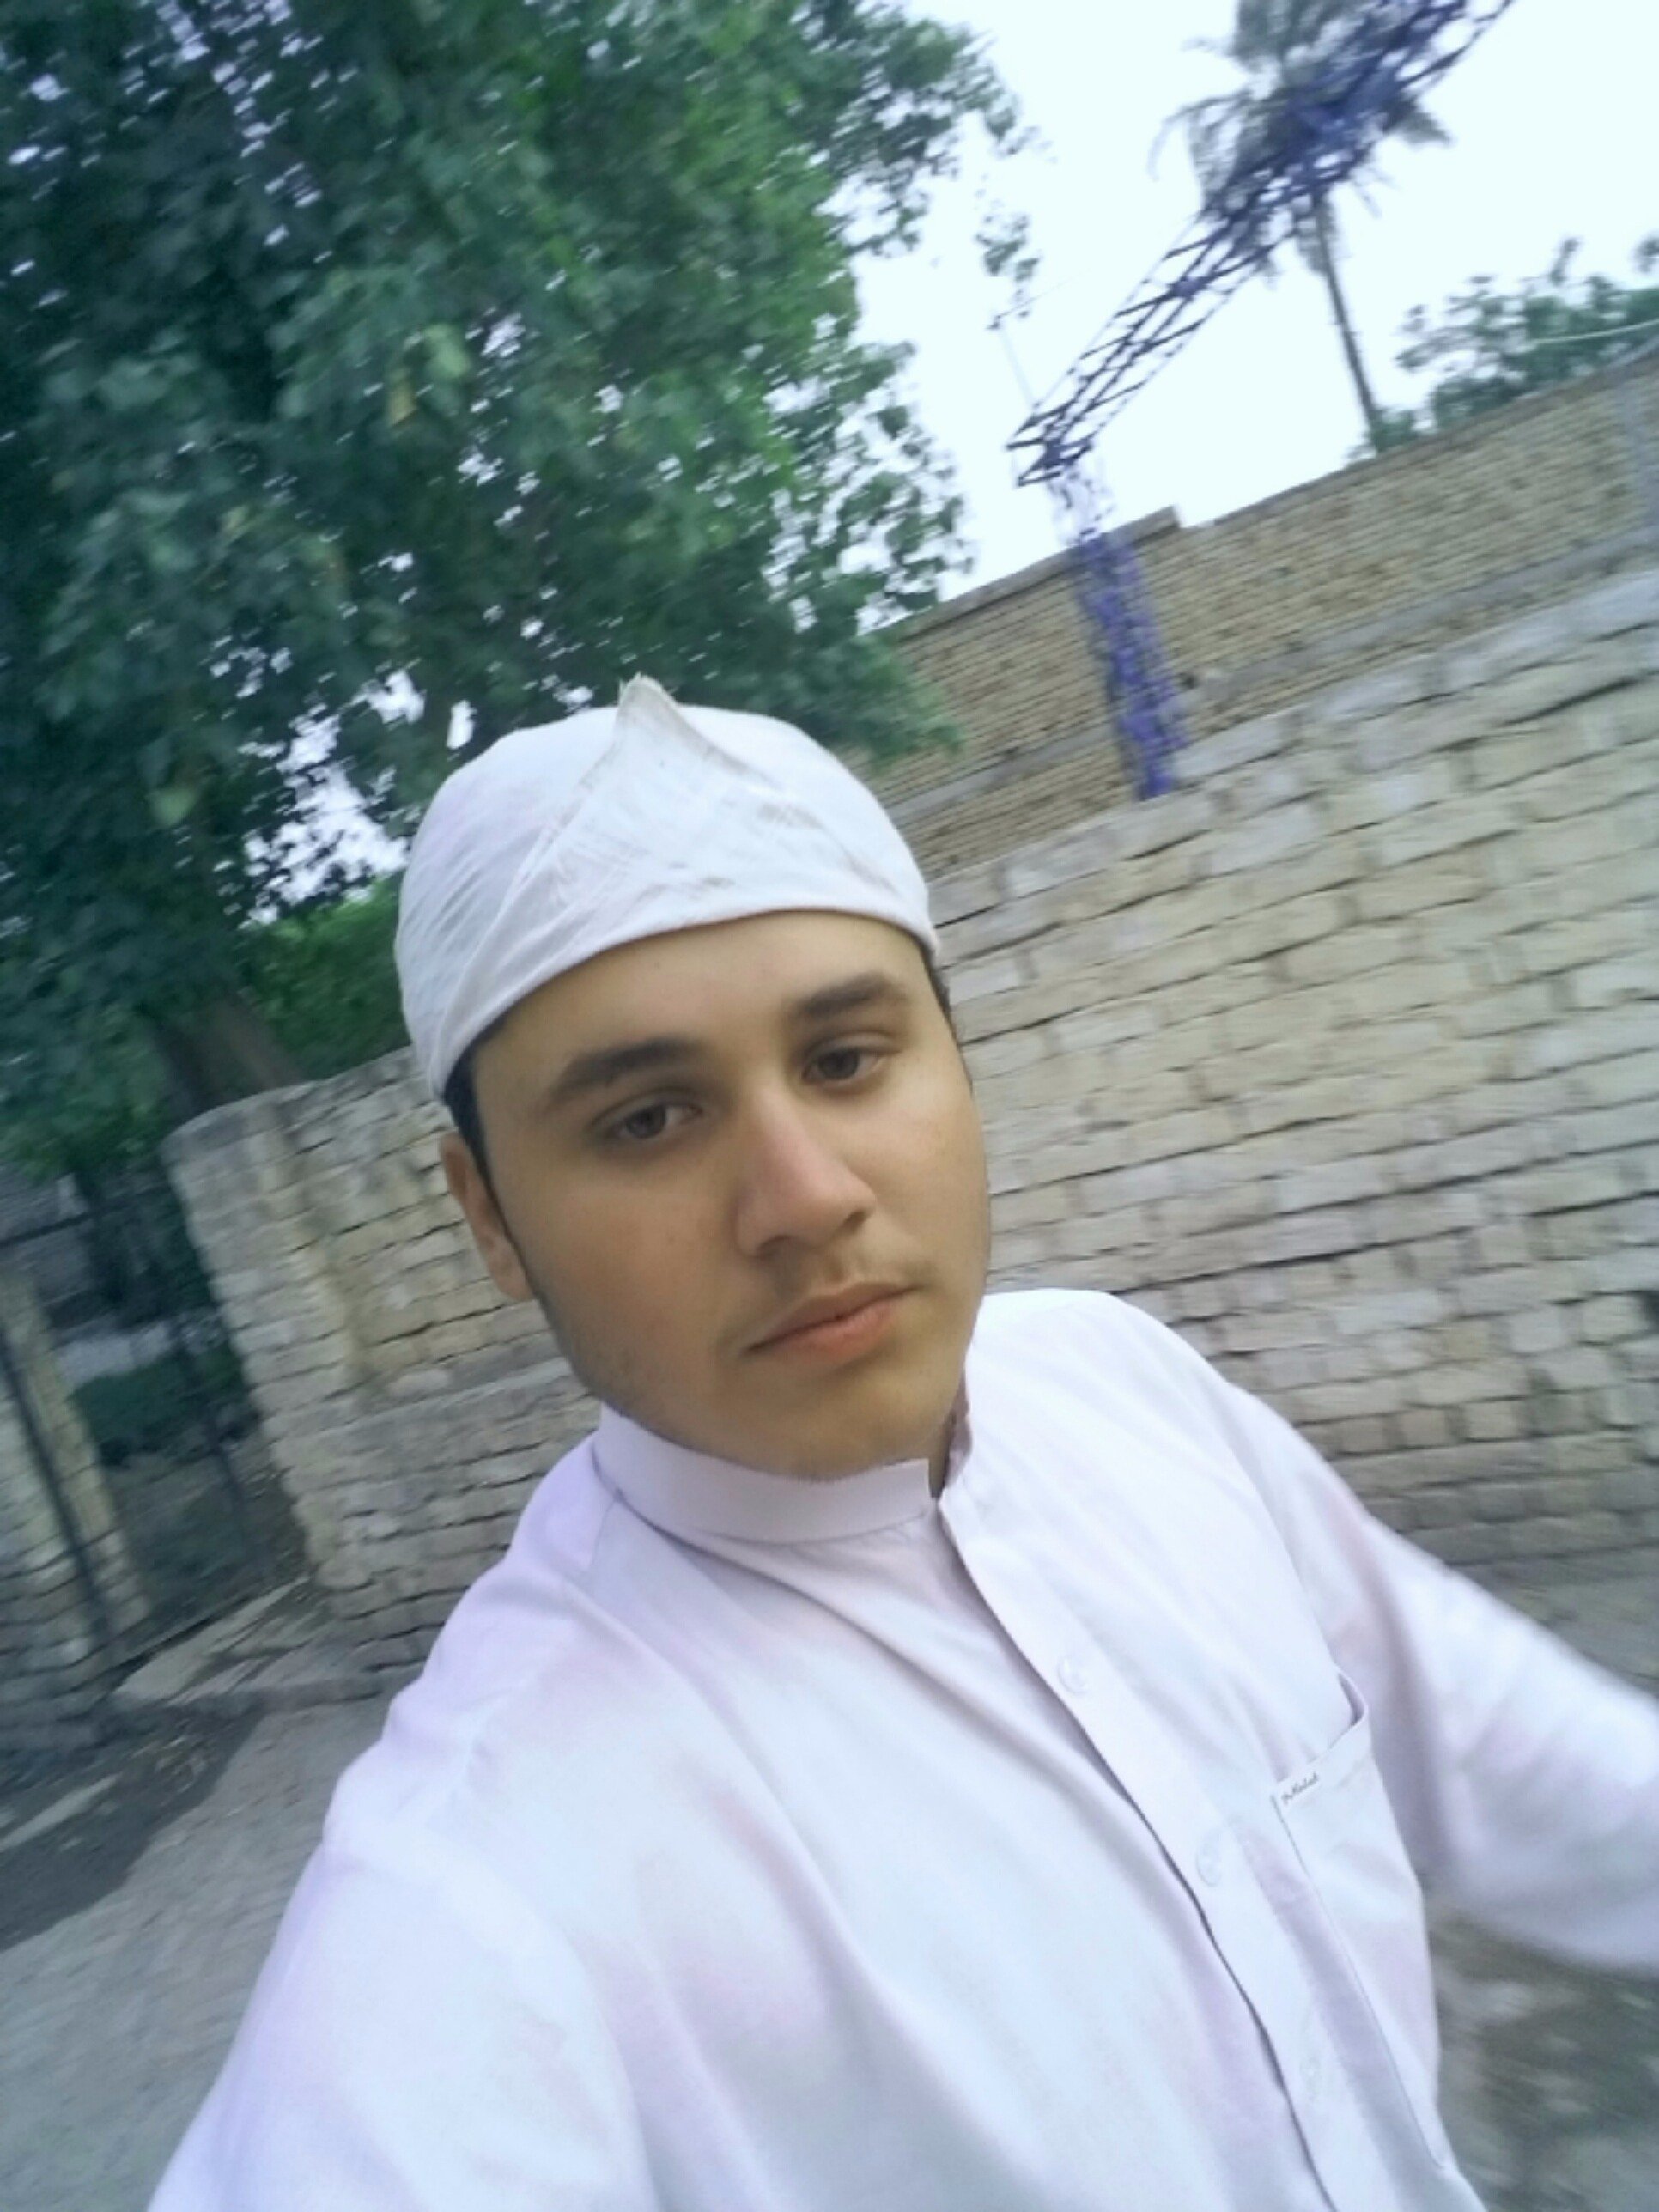 I am sajid Khan from Pakistan